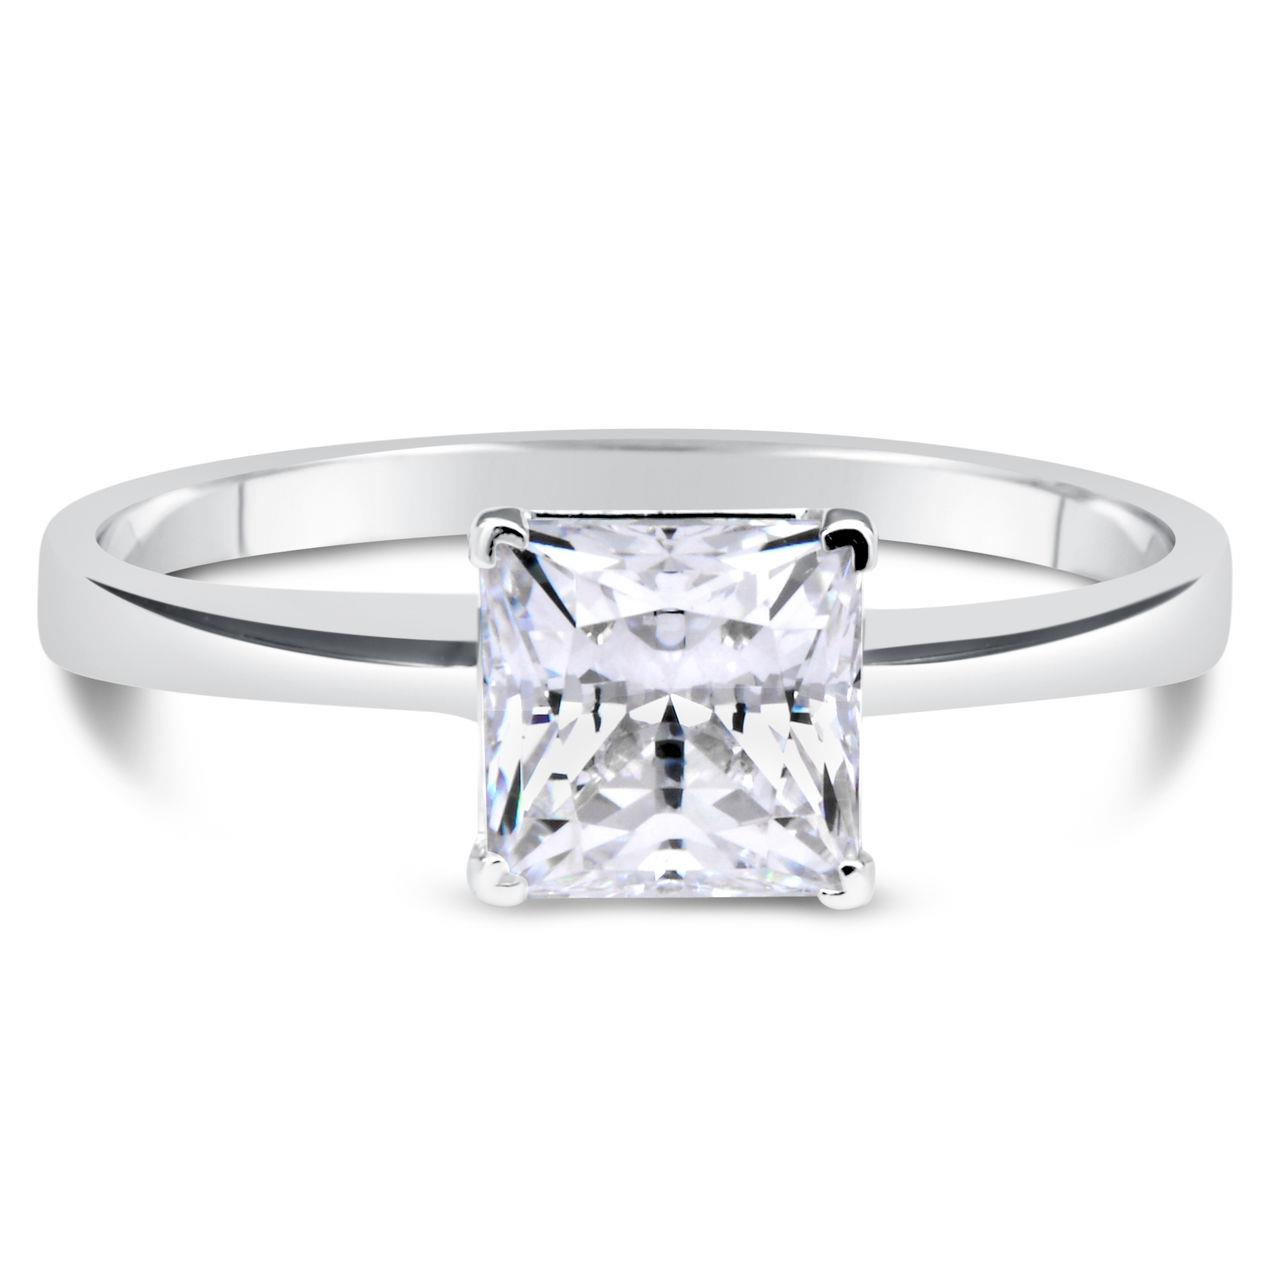 1 CT Princess Cut D/VS2 Diamond Solitaire Engagement Ring 